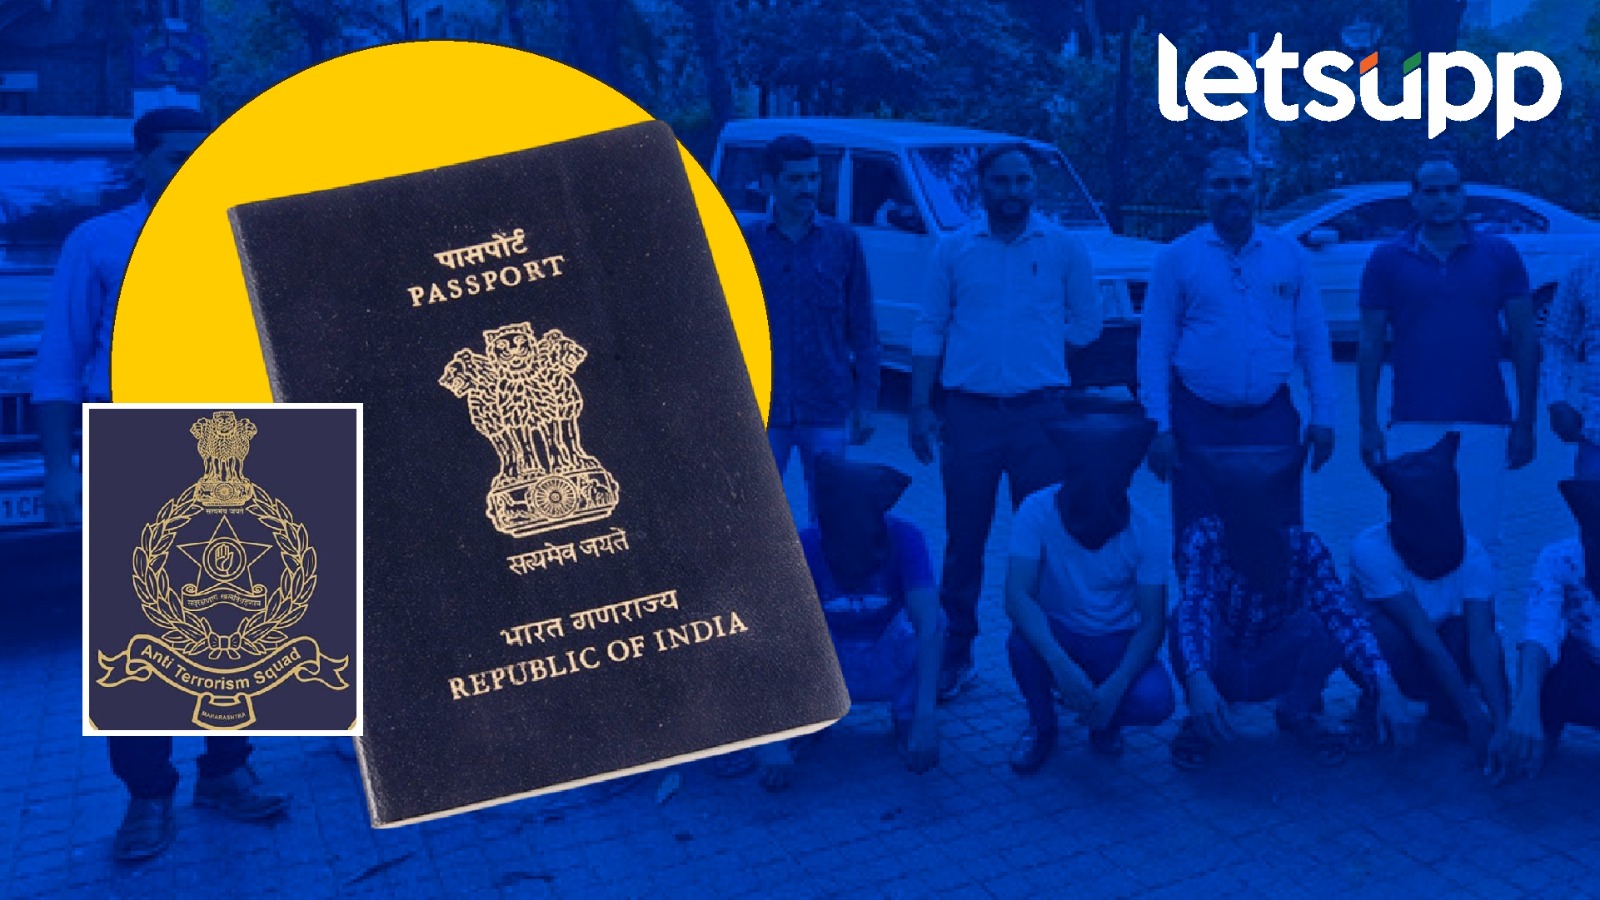 धक्कादायक ! लोकसभेला बनावट पासपोर्टने मतदान; मुंबईत एटीएसकडून चार बांगलादेशी अटकेत